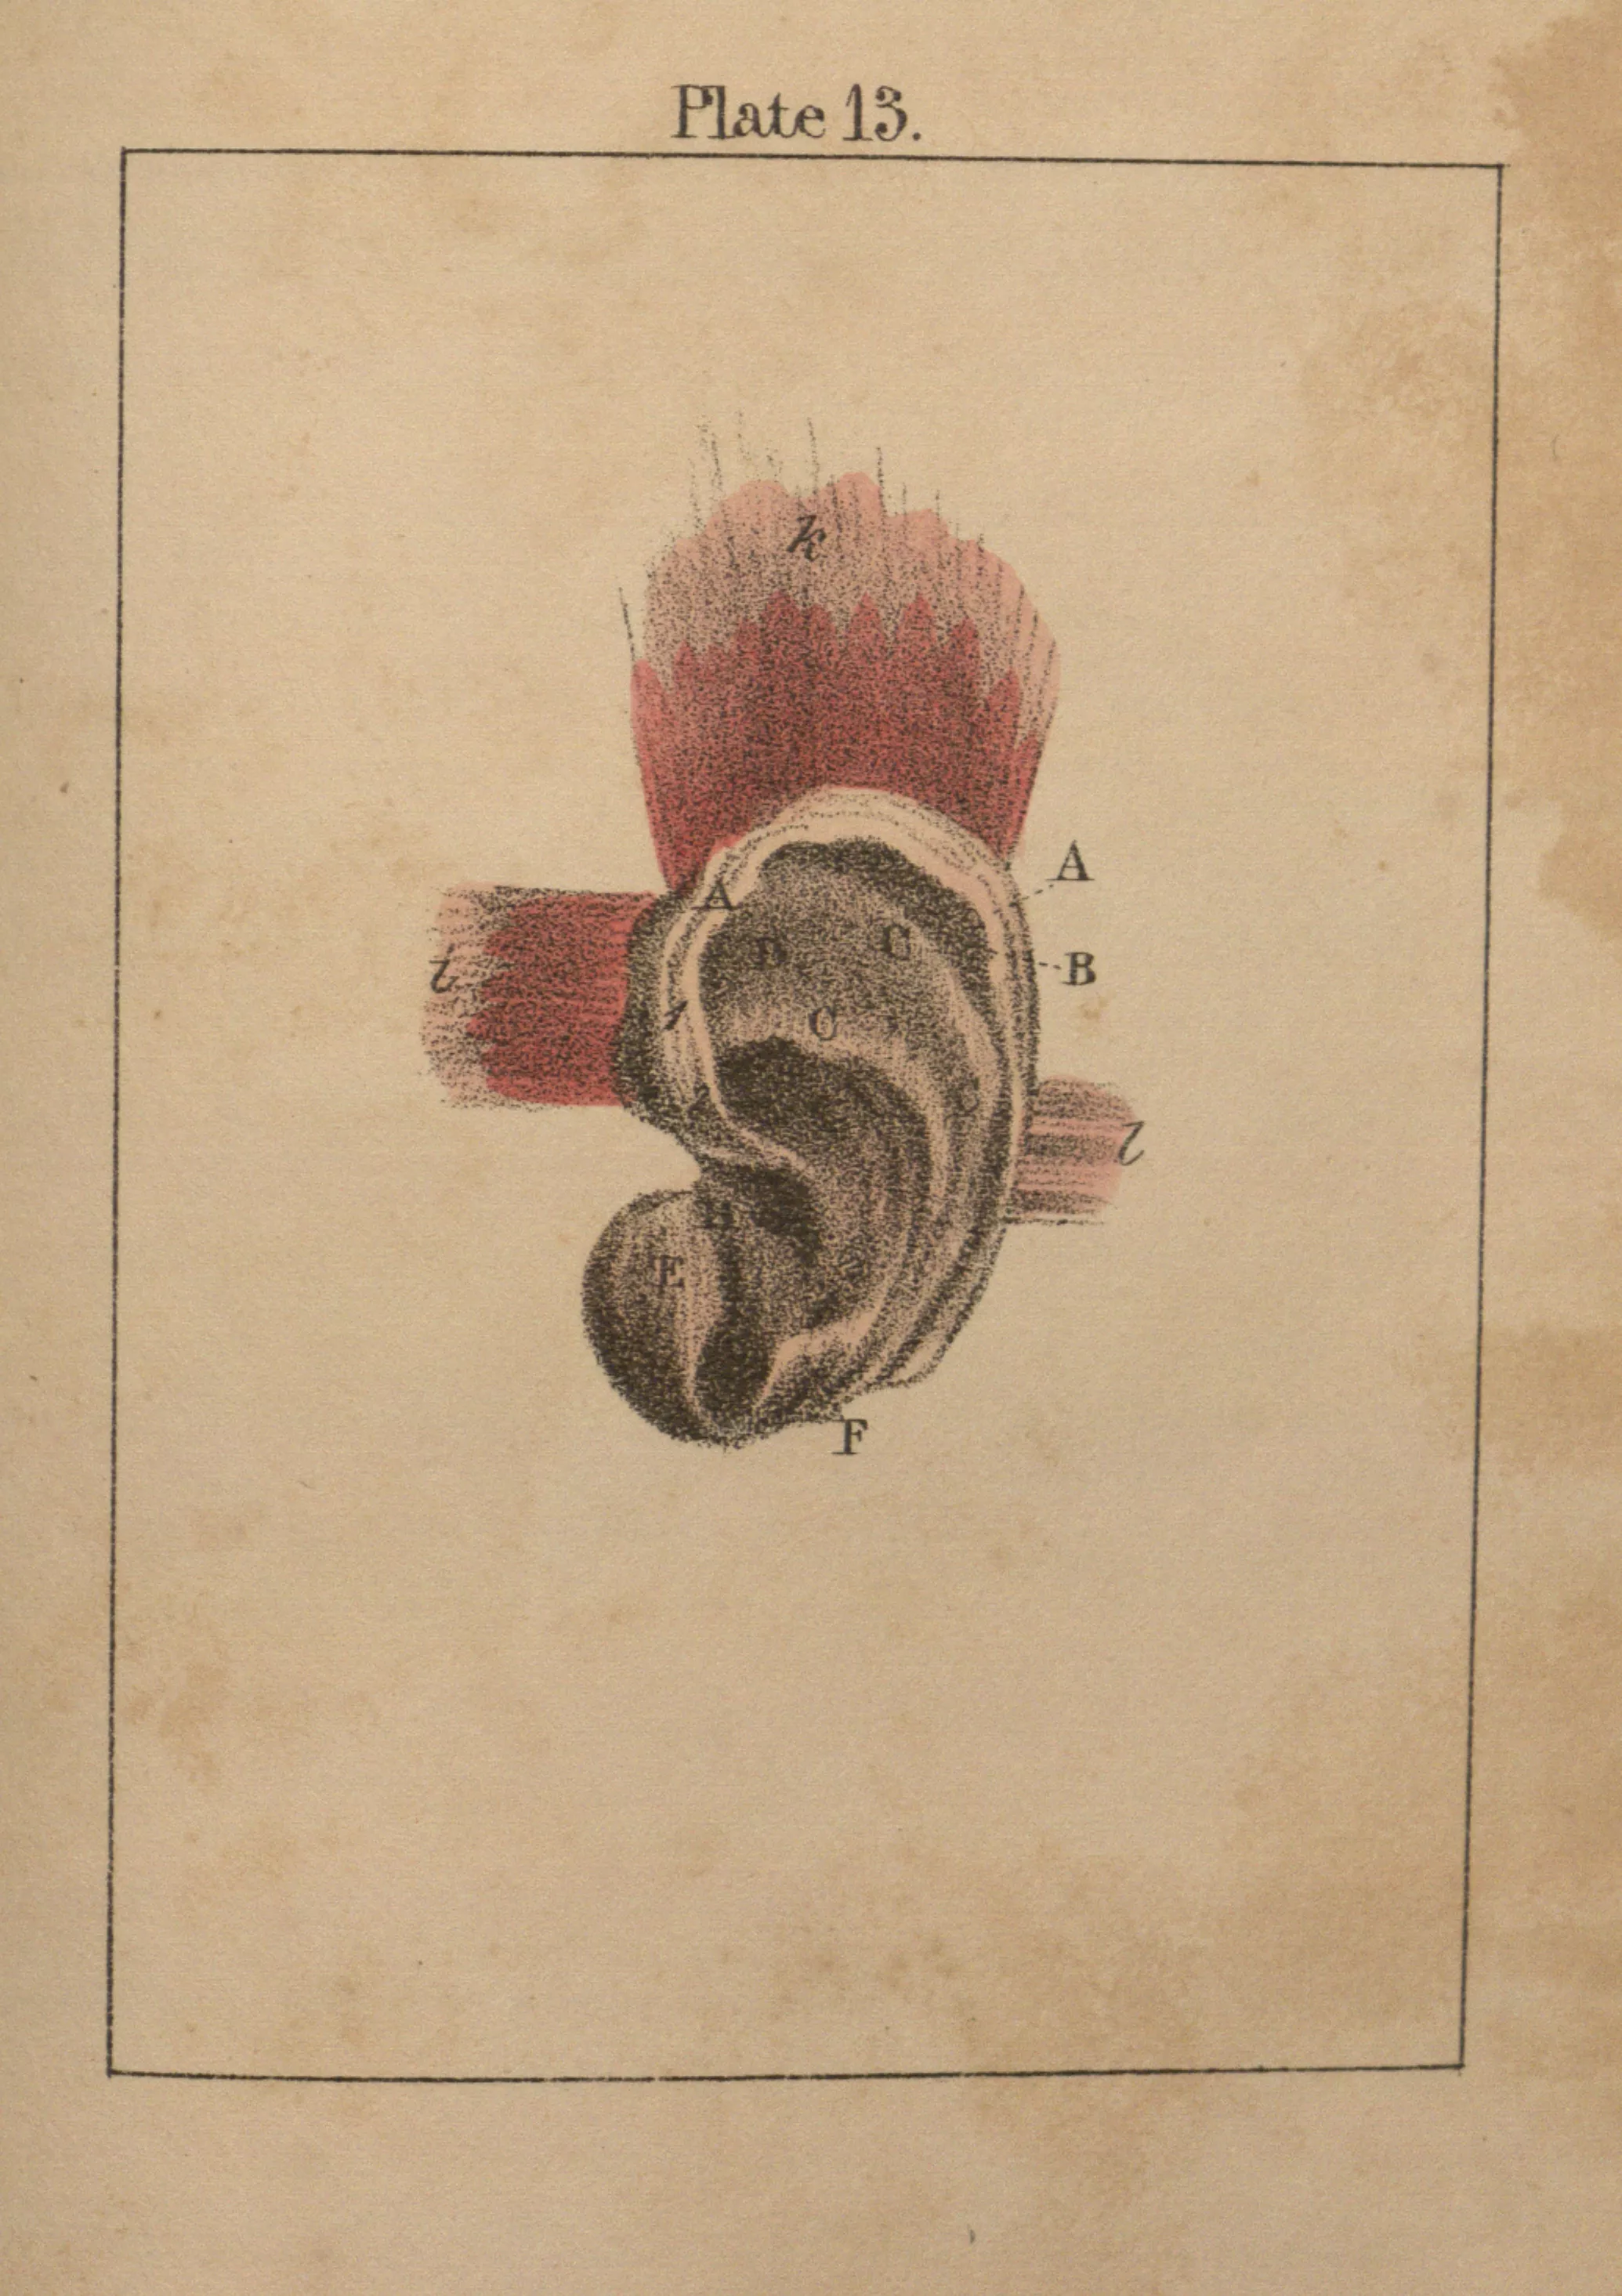 A diagram of an ear